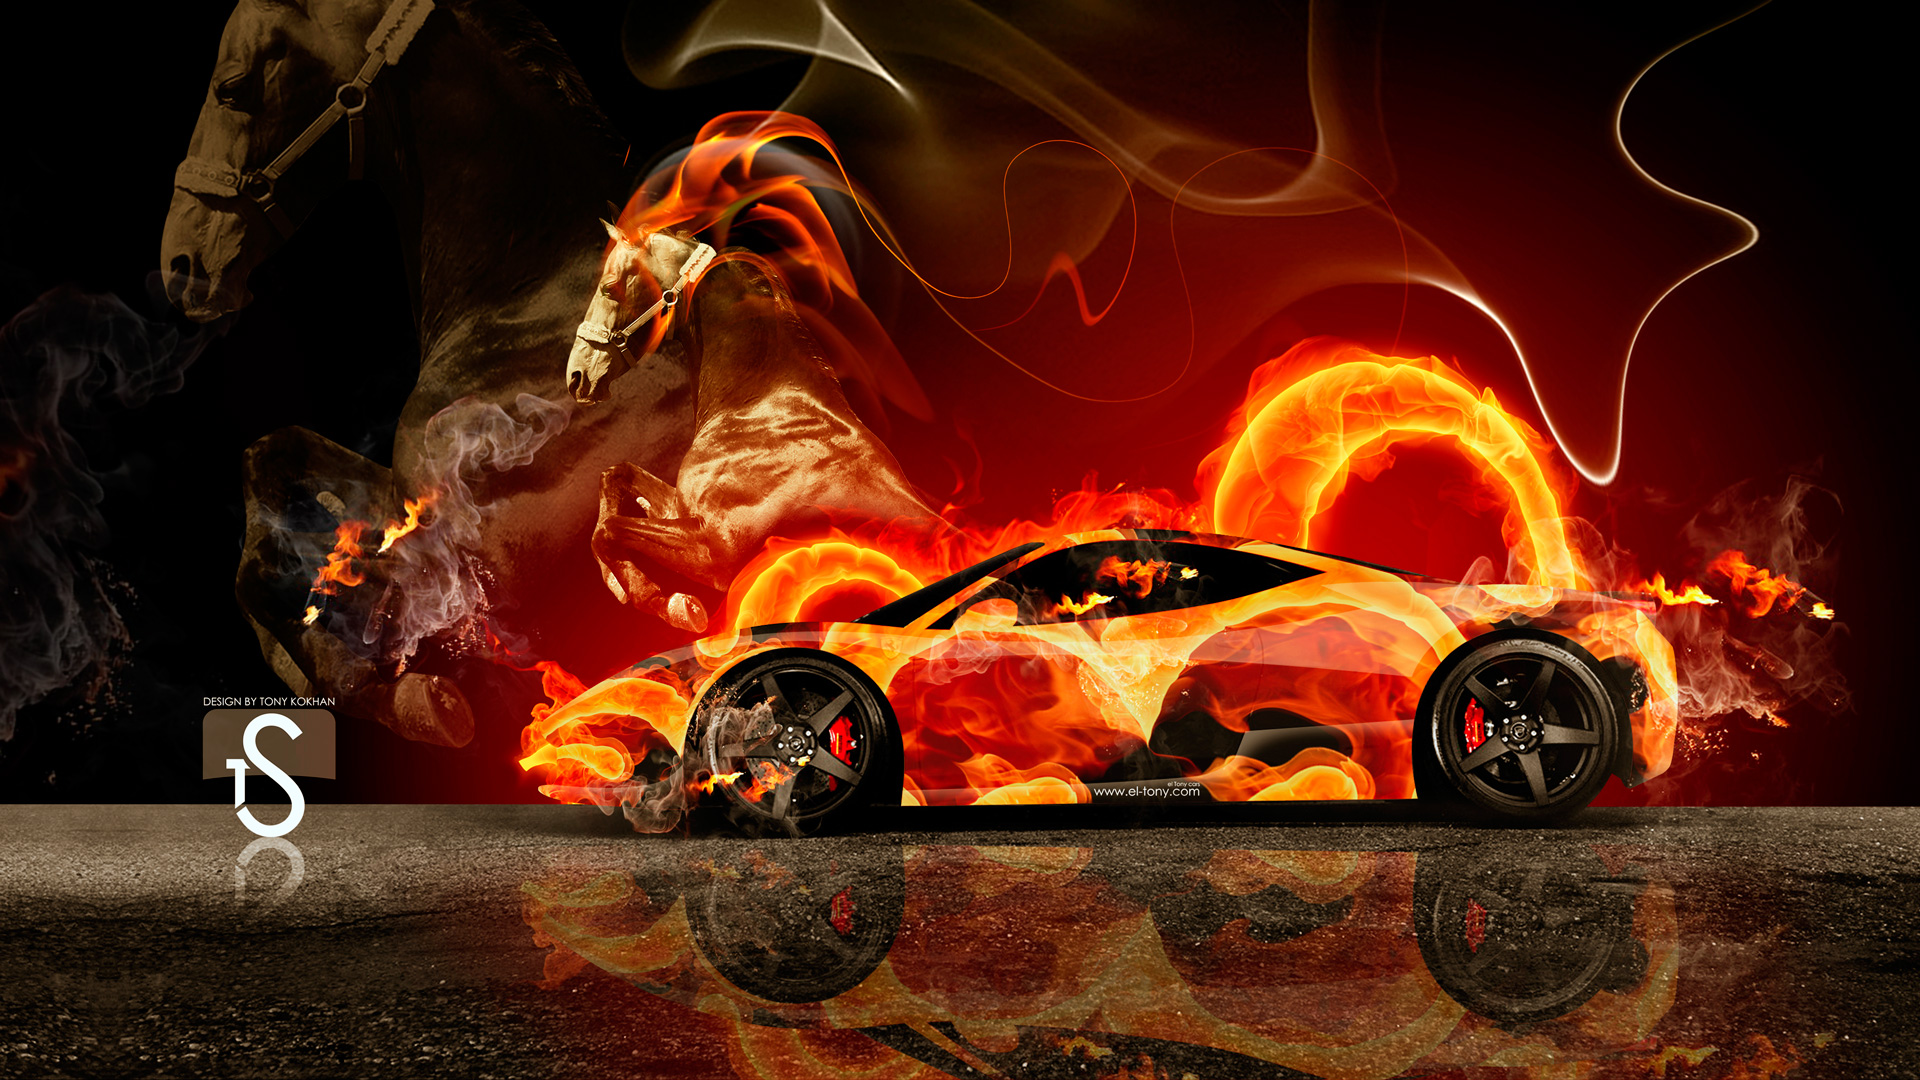 Fire Horse Wallpaper Hd - Ferrari Fire , HD Wallpaper & Backgrounds